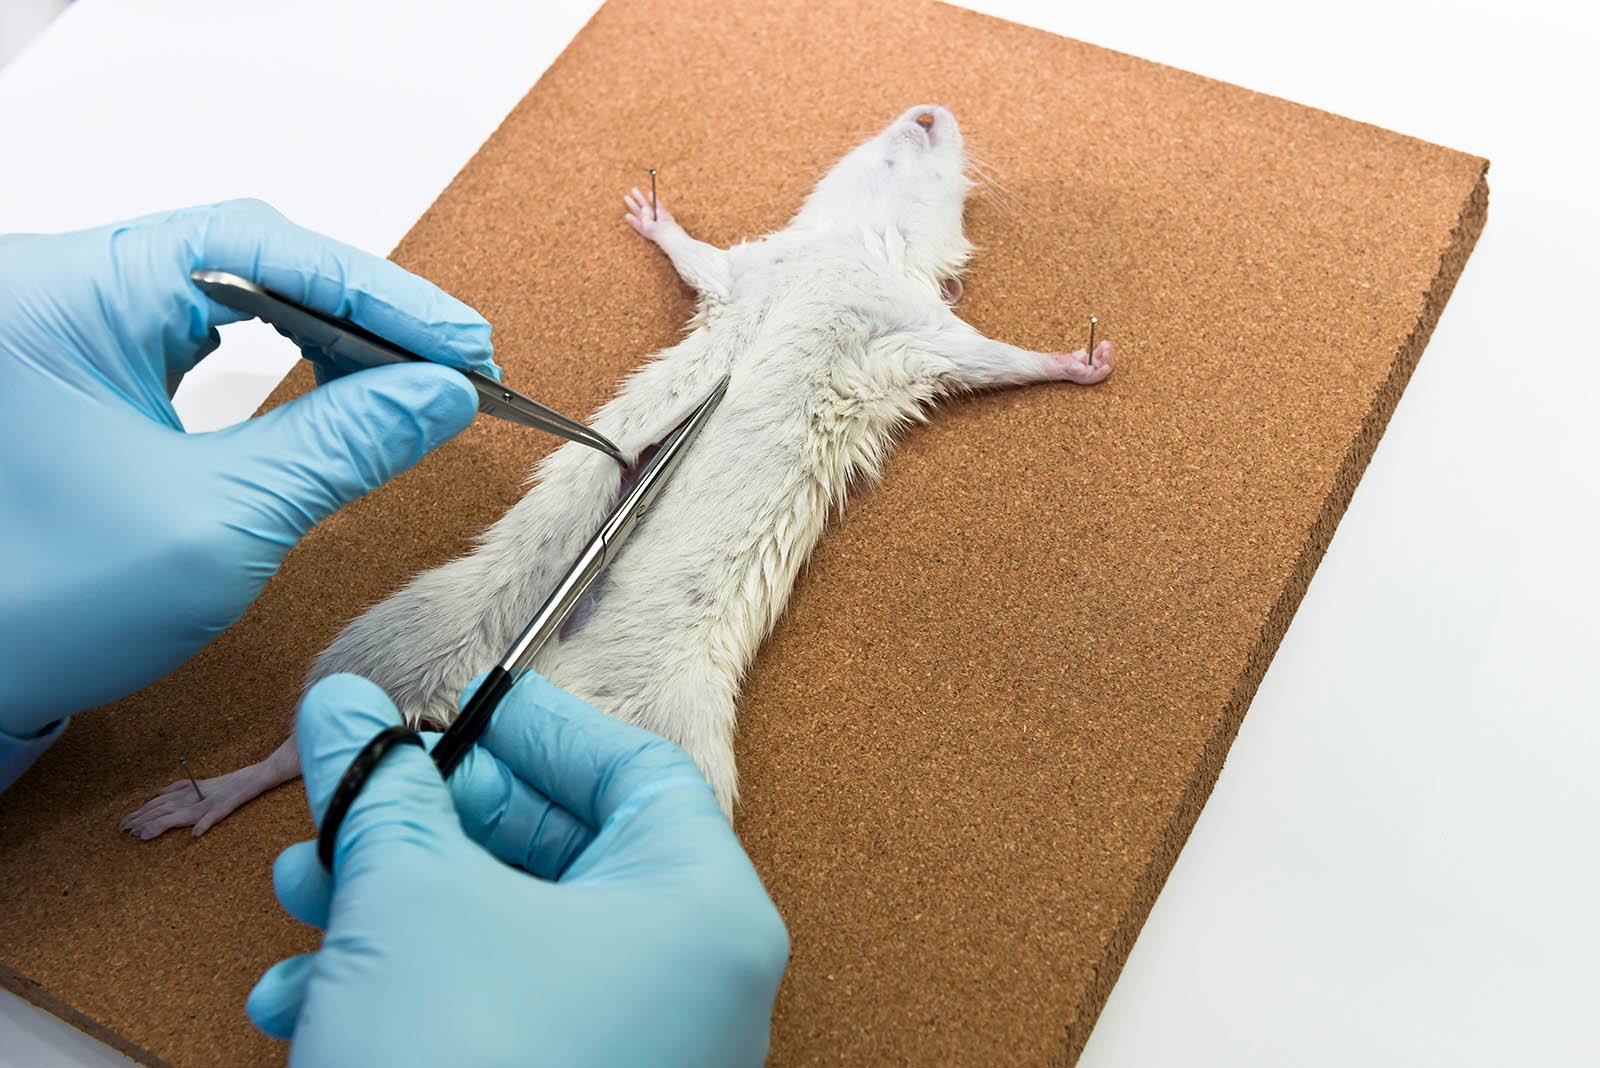 Tiermissbrauch im Studium: Sezierkurse und Tierversuche an der Uni